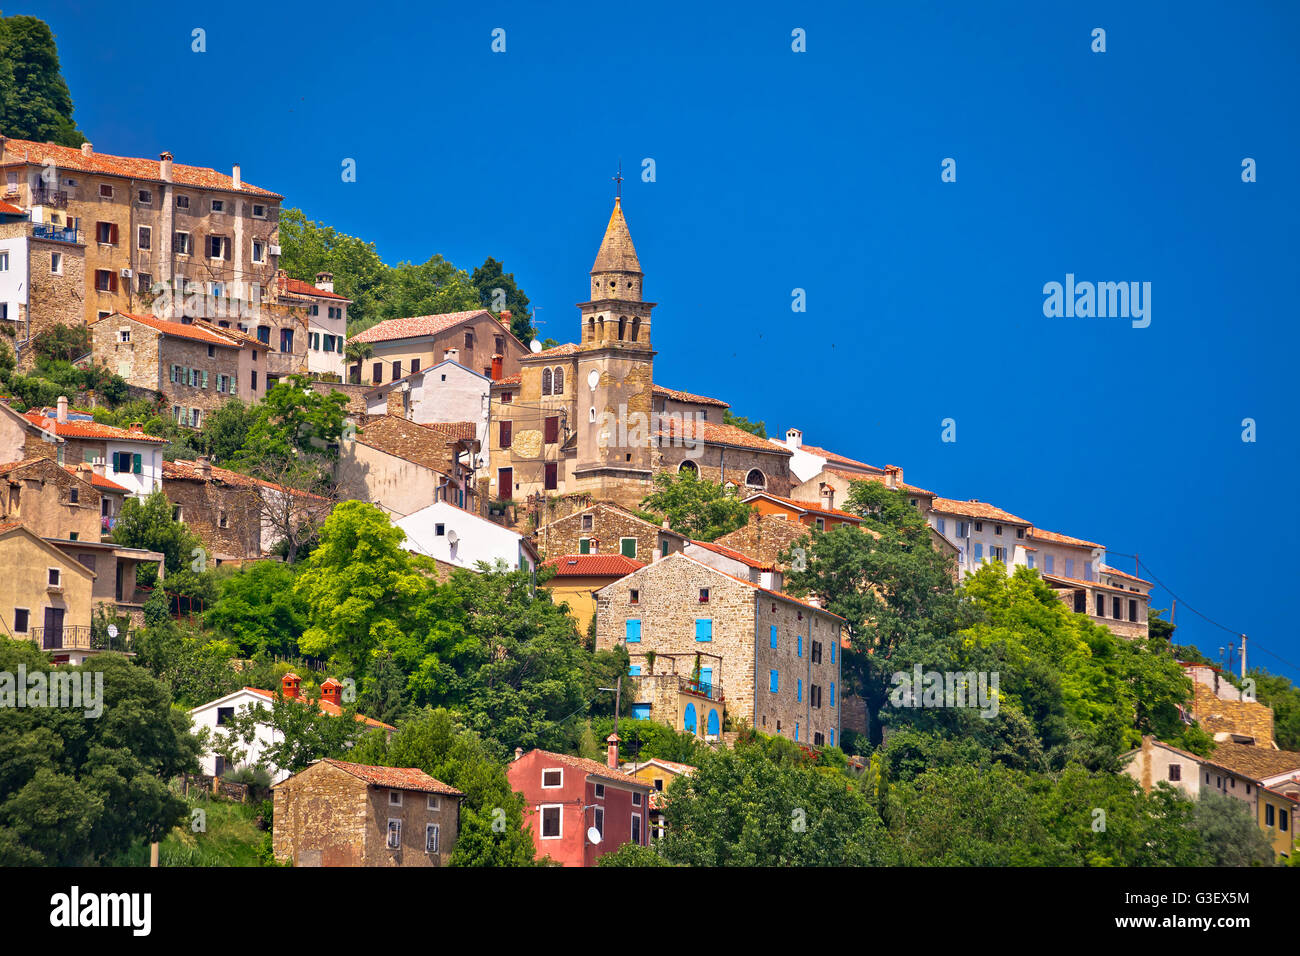 Town of Motovun old mediterranean architecture view, Istria, Croatia Stock Photo